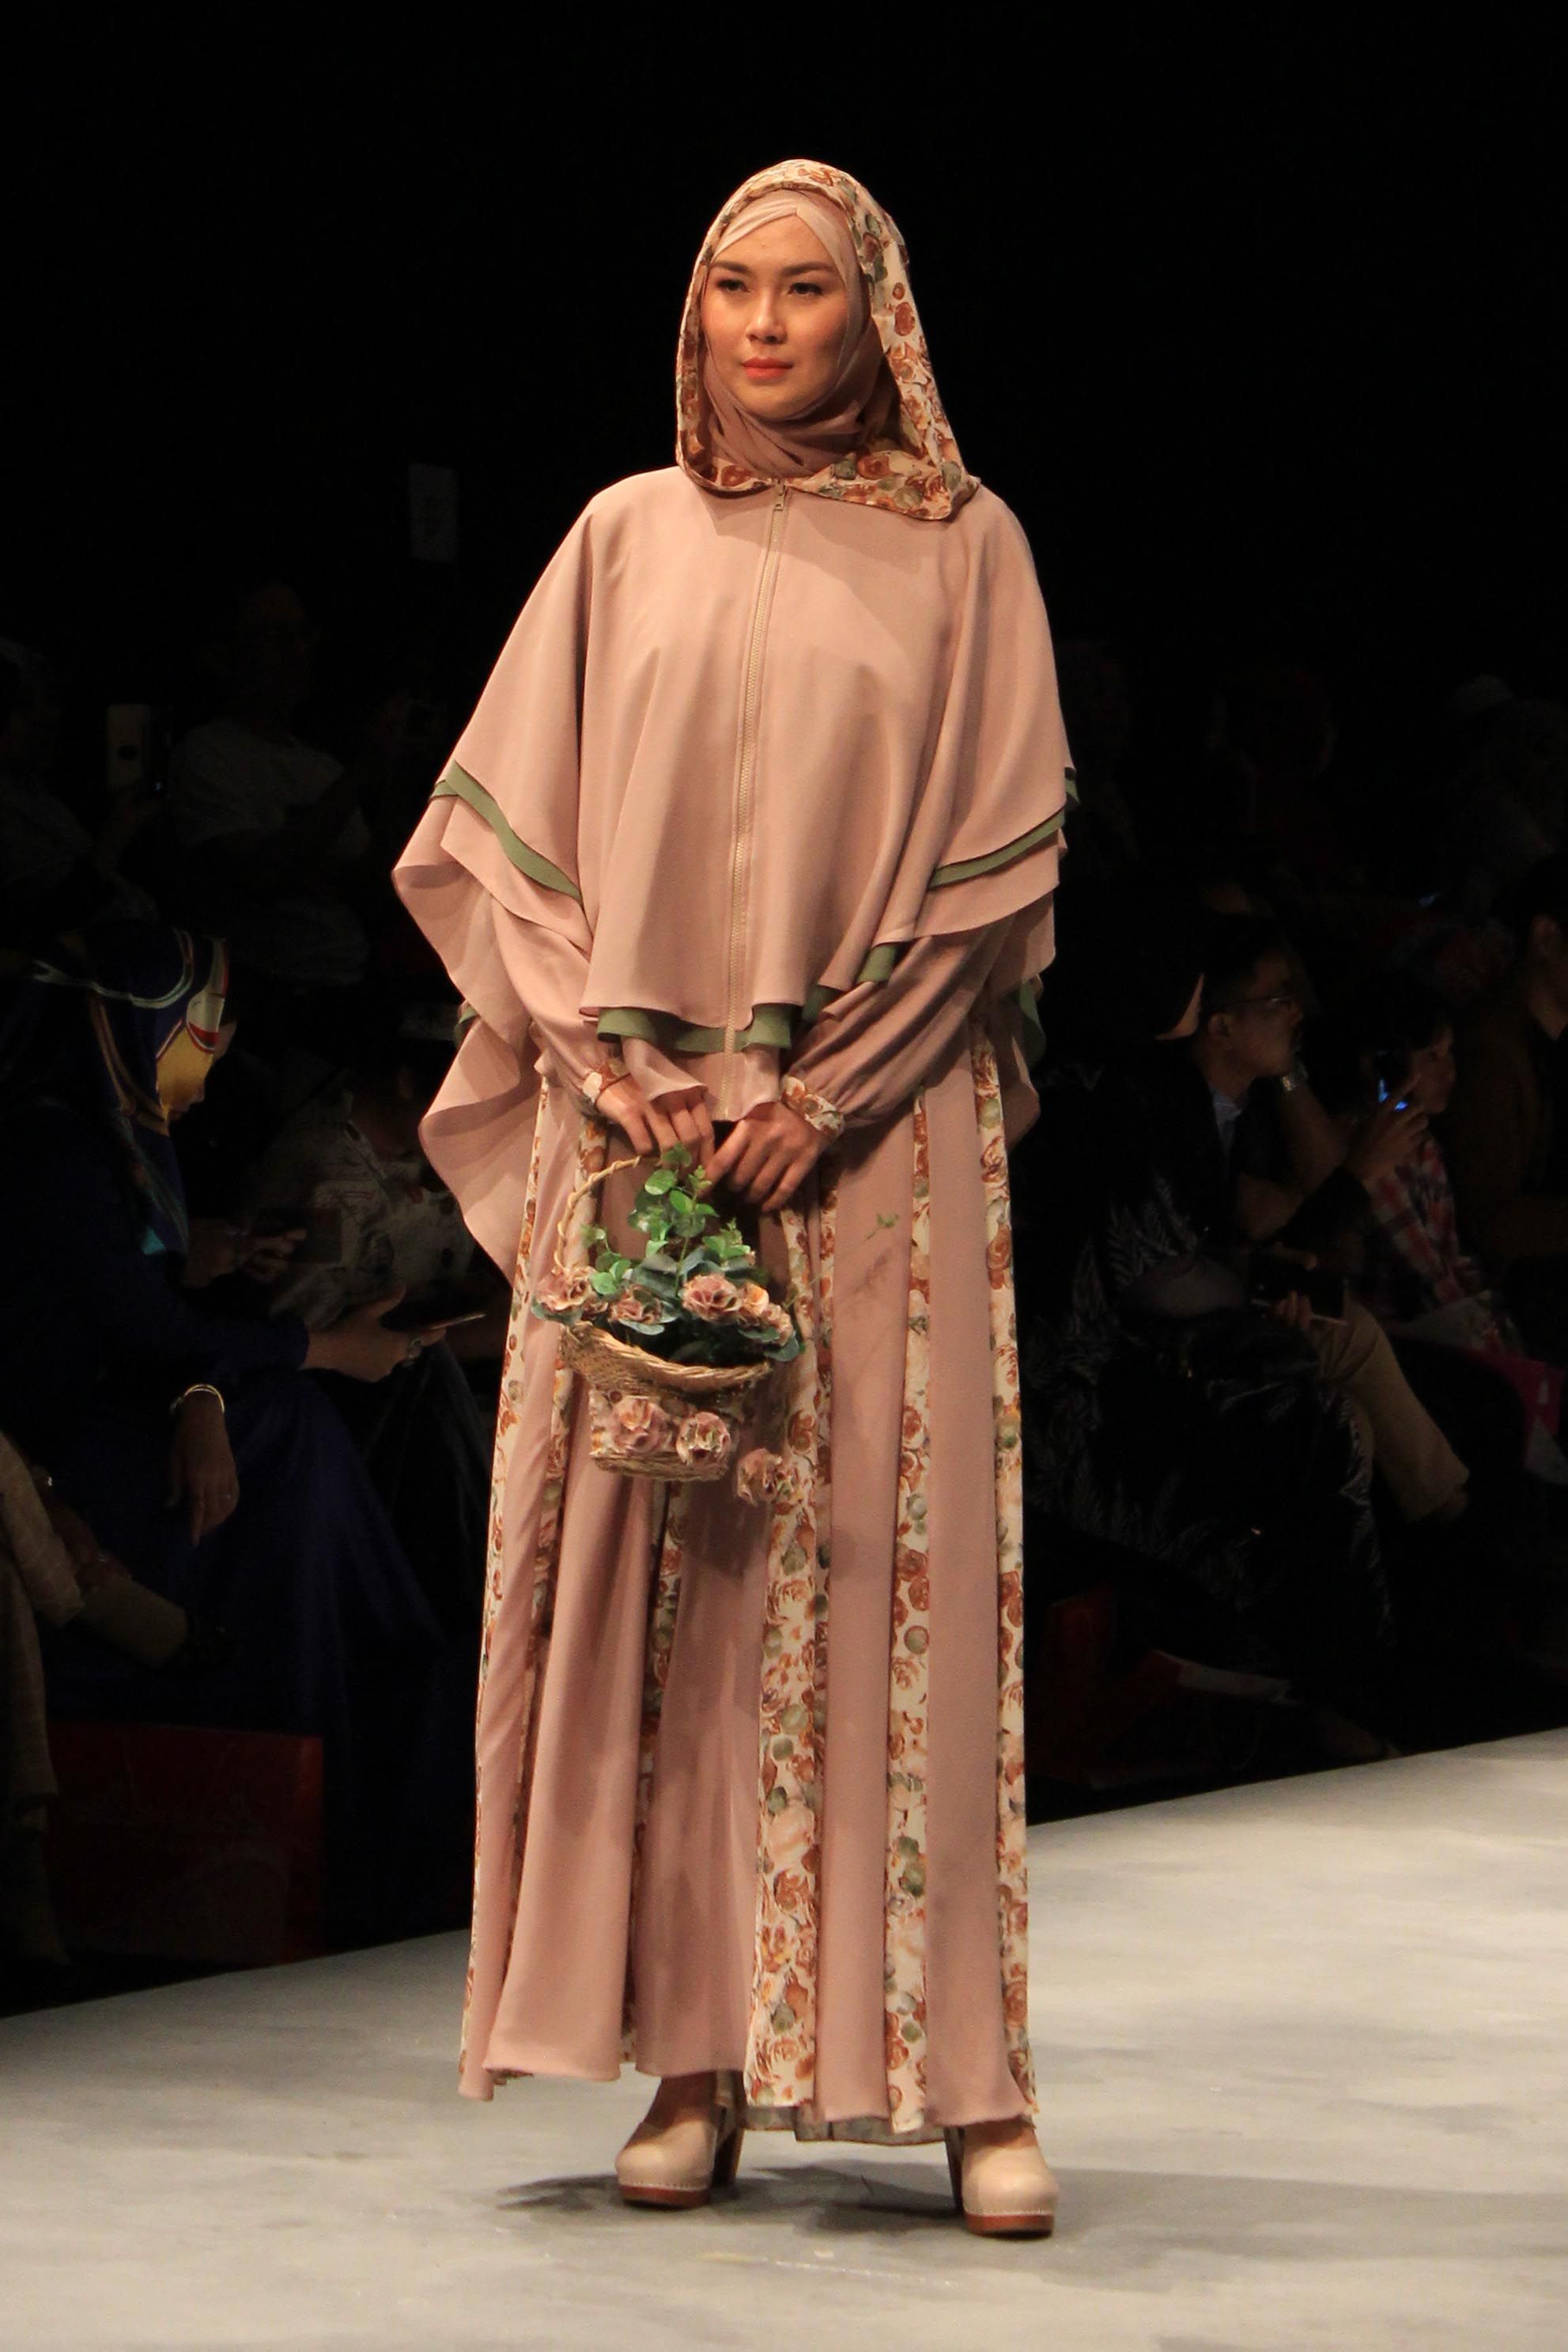 trend-fashion-hijab-floral-darabirra-9152e413e42d16ee87e5291f920308d7.JPG